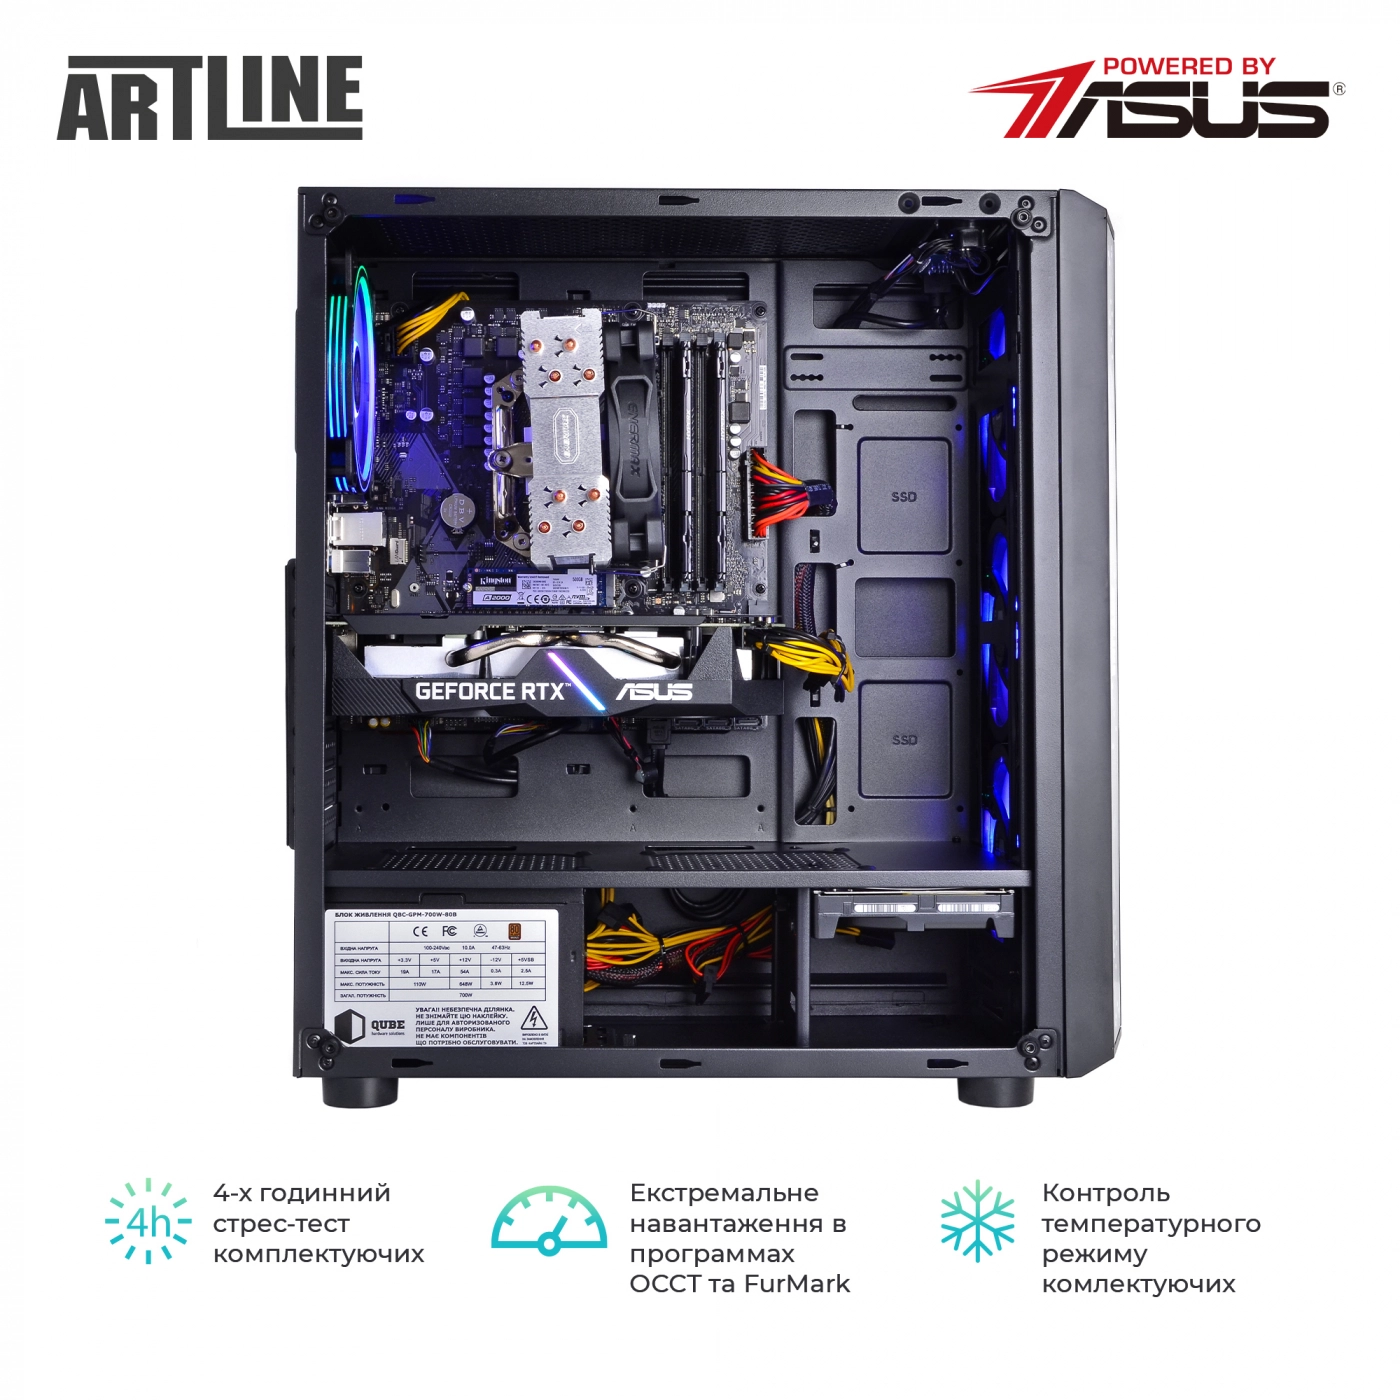 Купить Компьютер ARTLINE Gaming X73v14 - фото 8